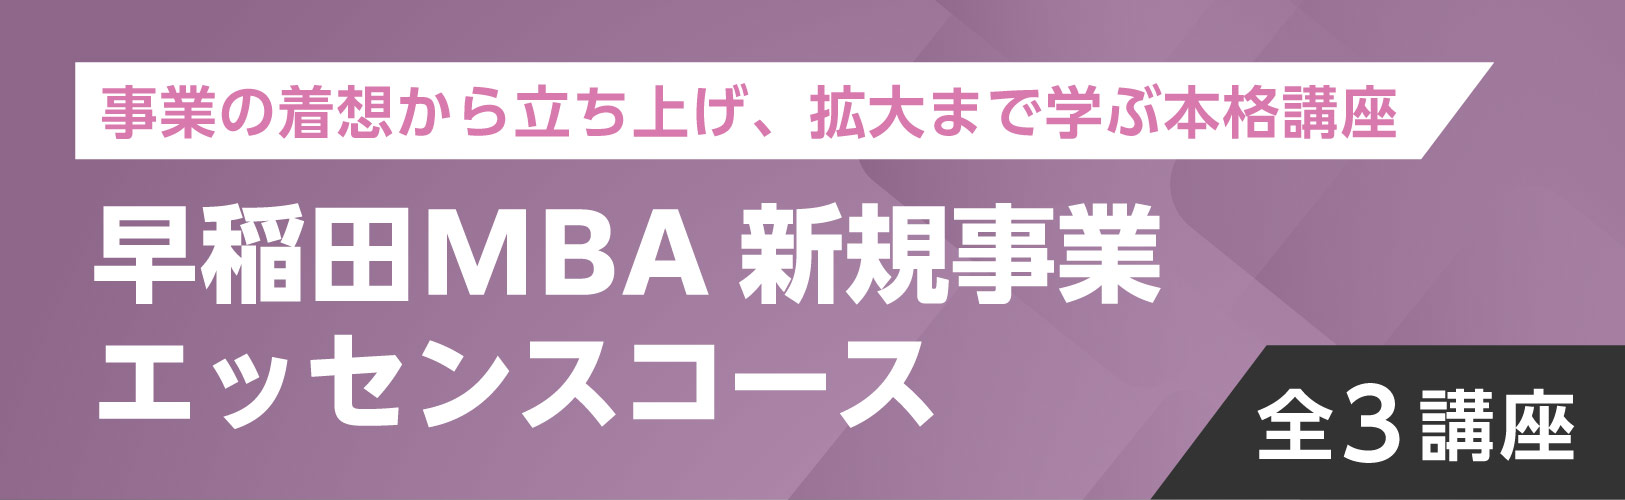 早稲田MBA 新規事業エッセンスコース